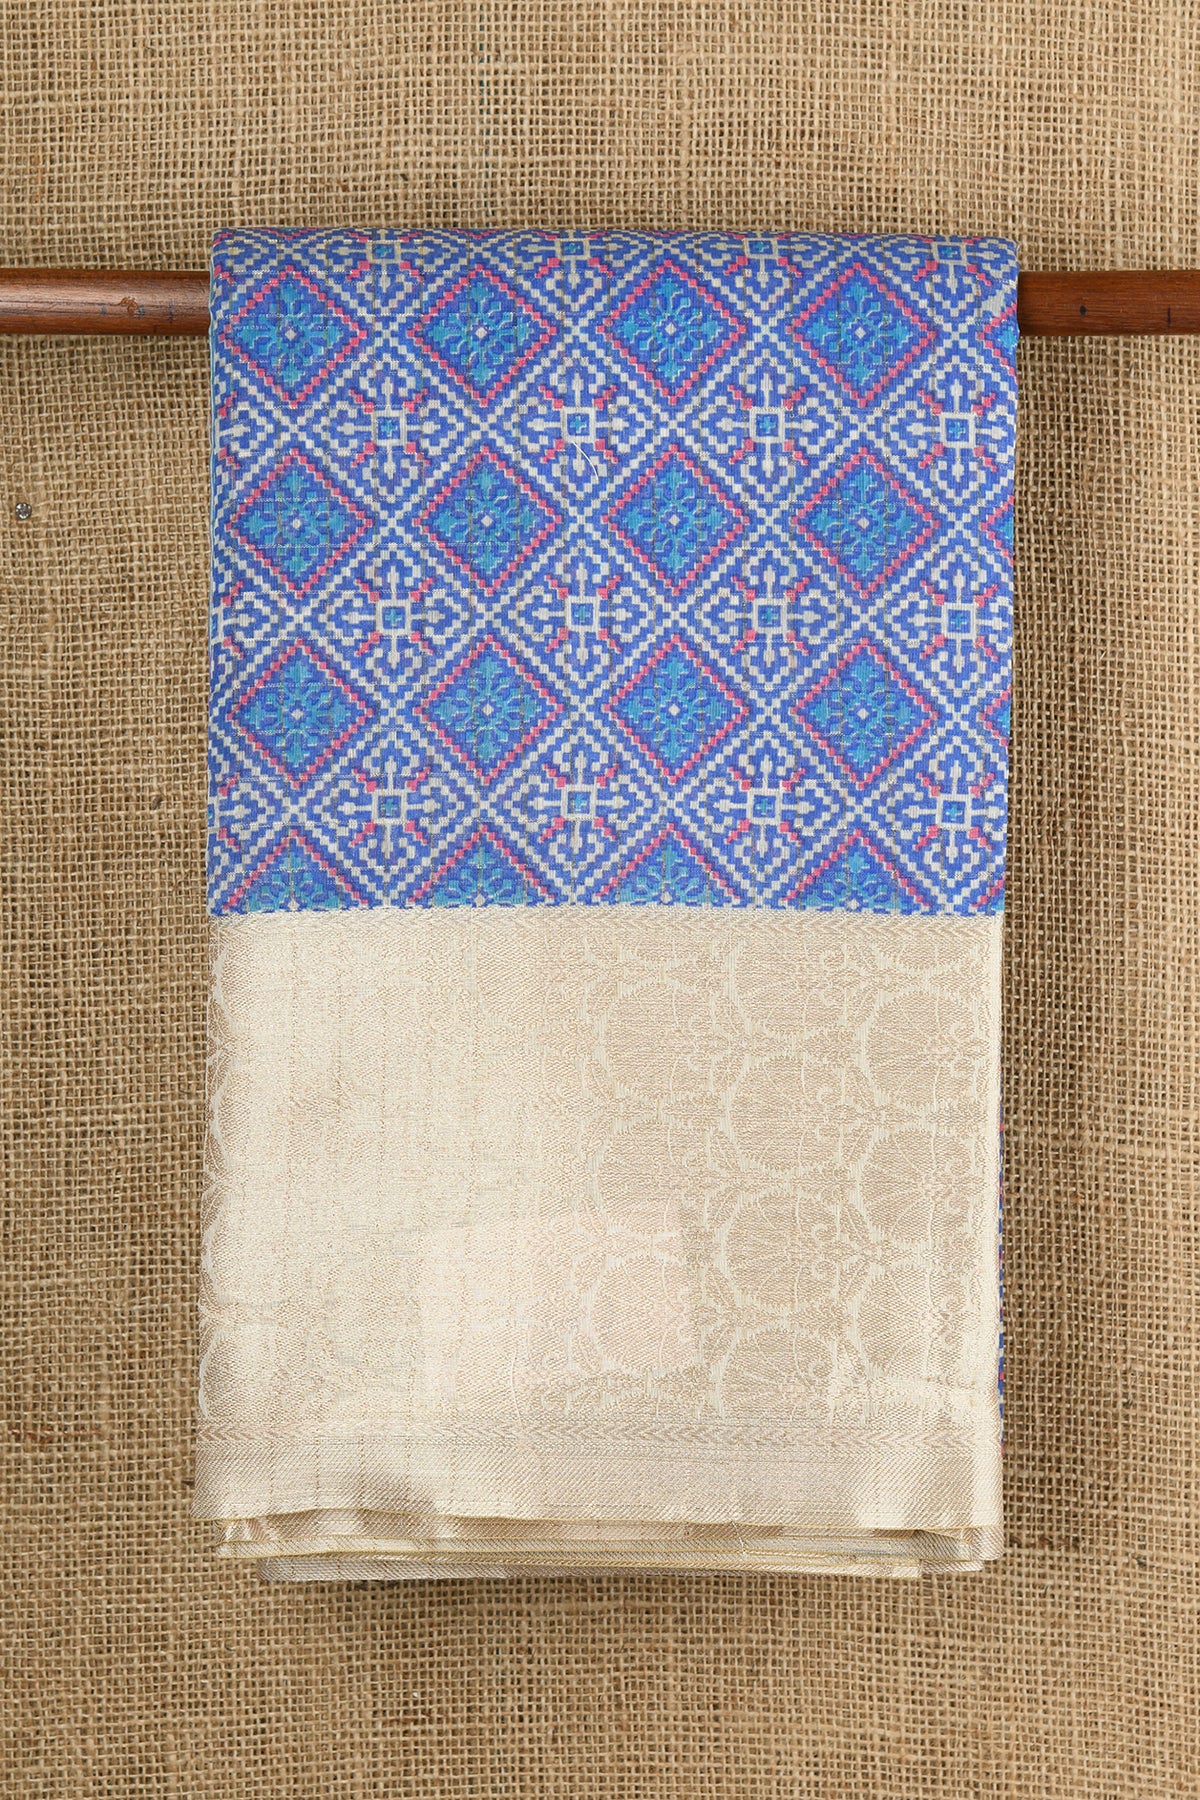 Big Floral Zari Border With Geometric Pattern Cerulean Blue Semi Kota Cotton Saree